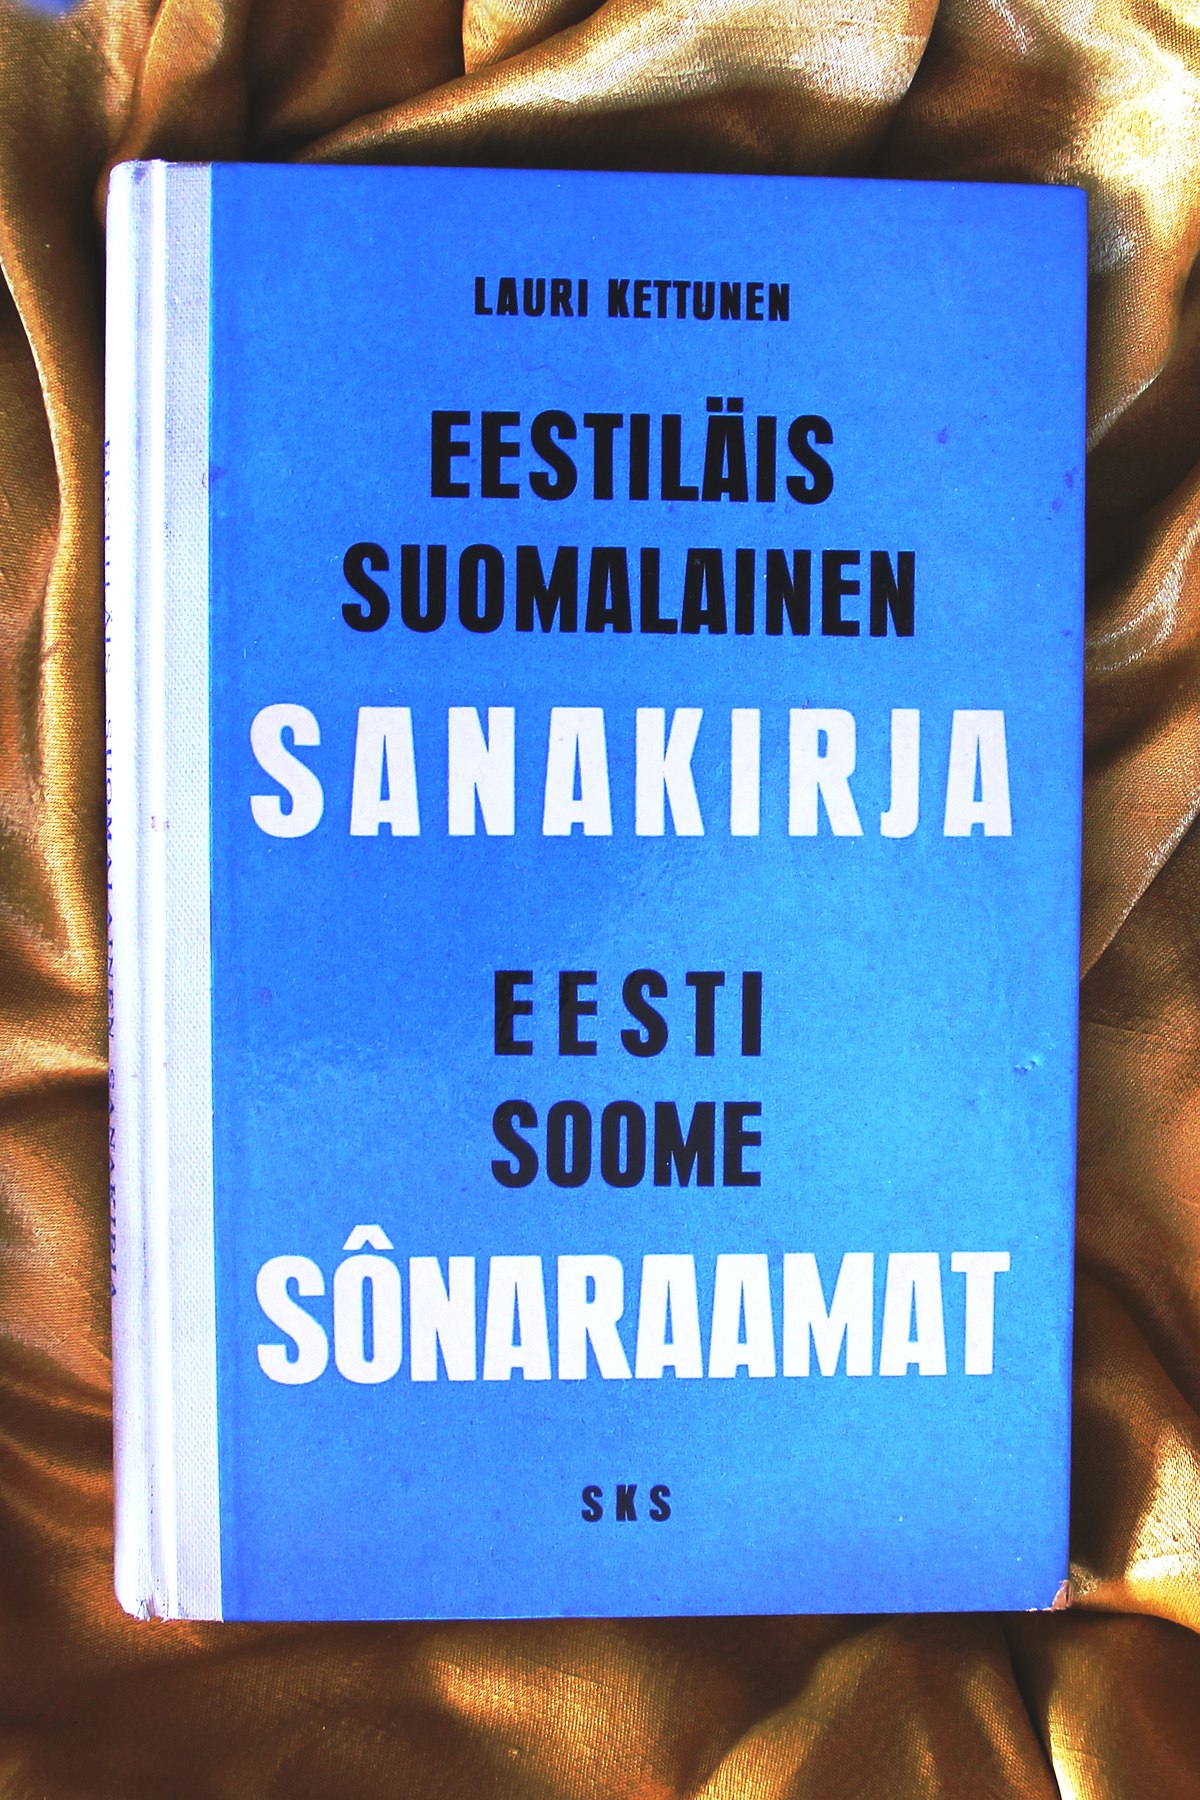 Eestiläis-suomalainen sanakirja – Wikipedia